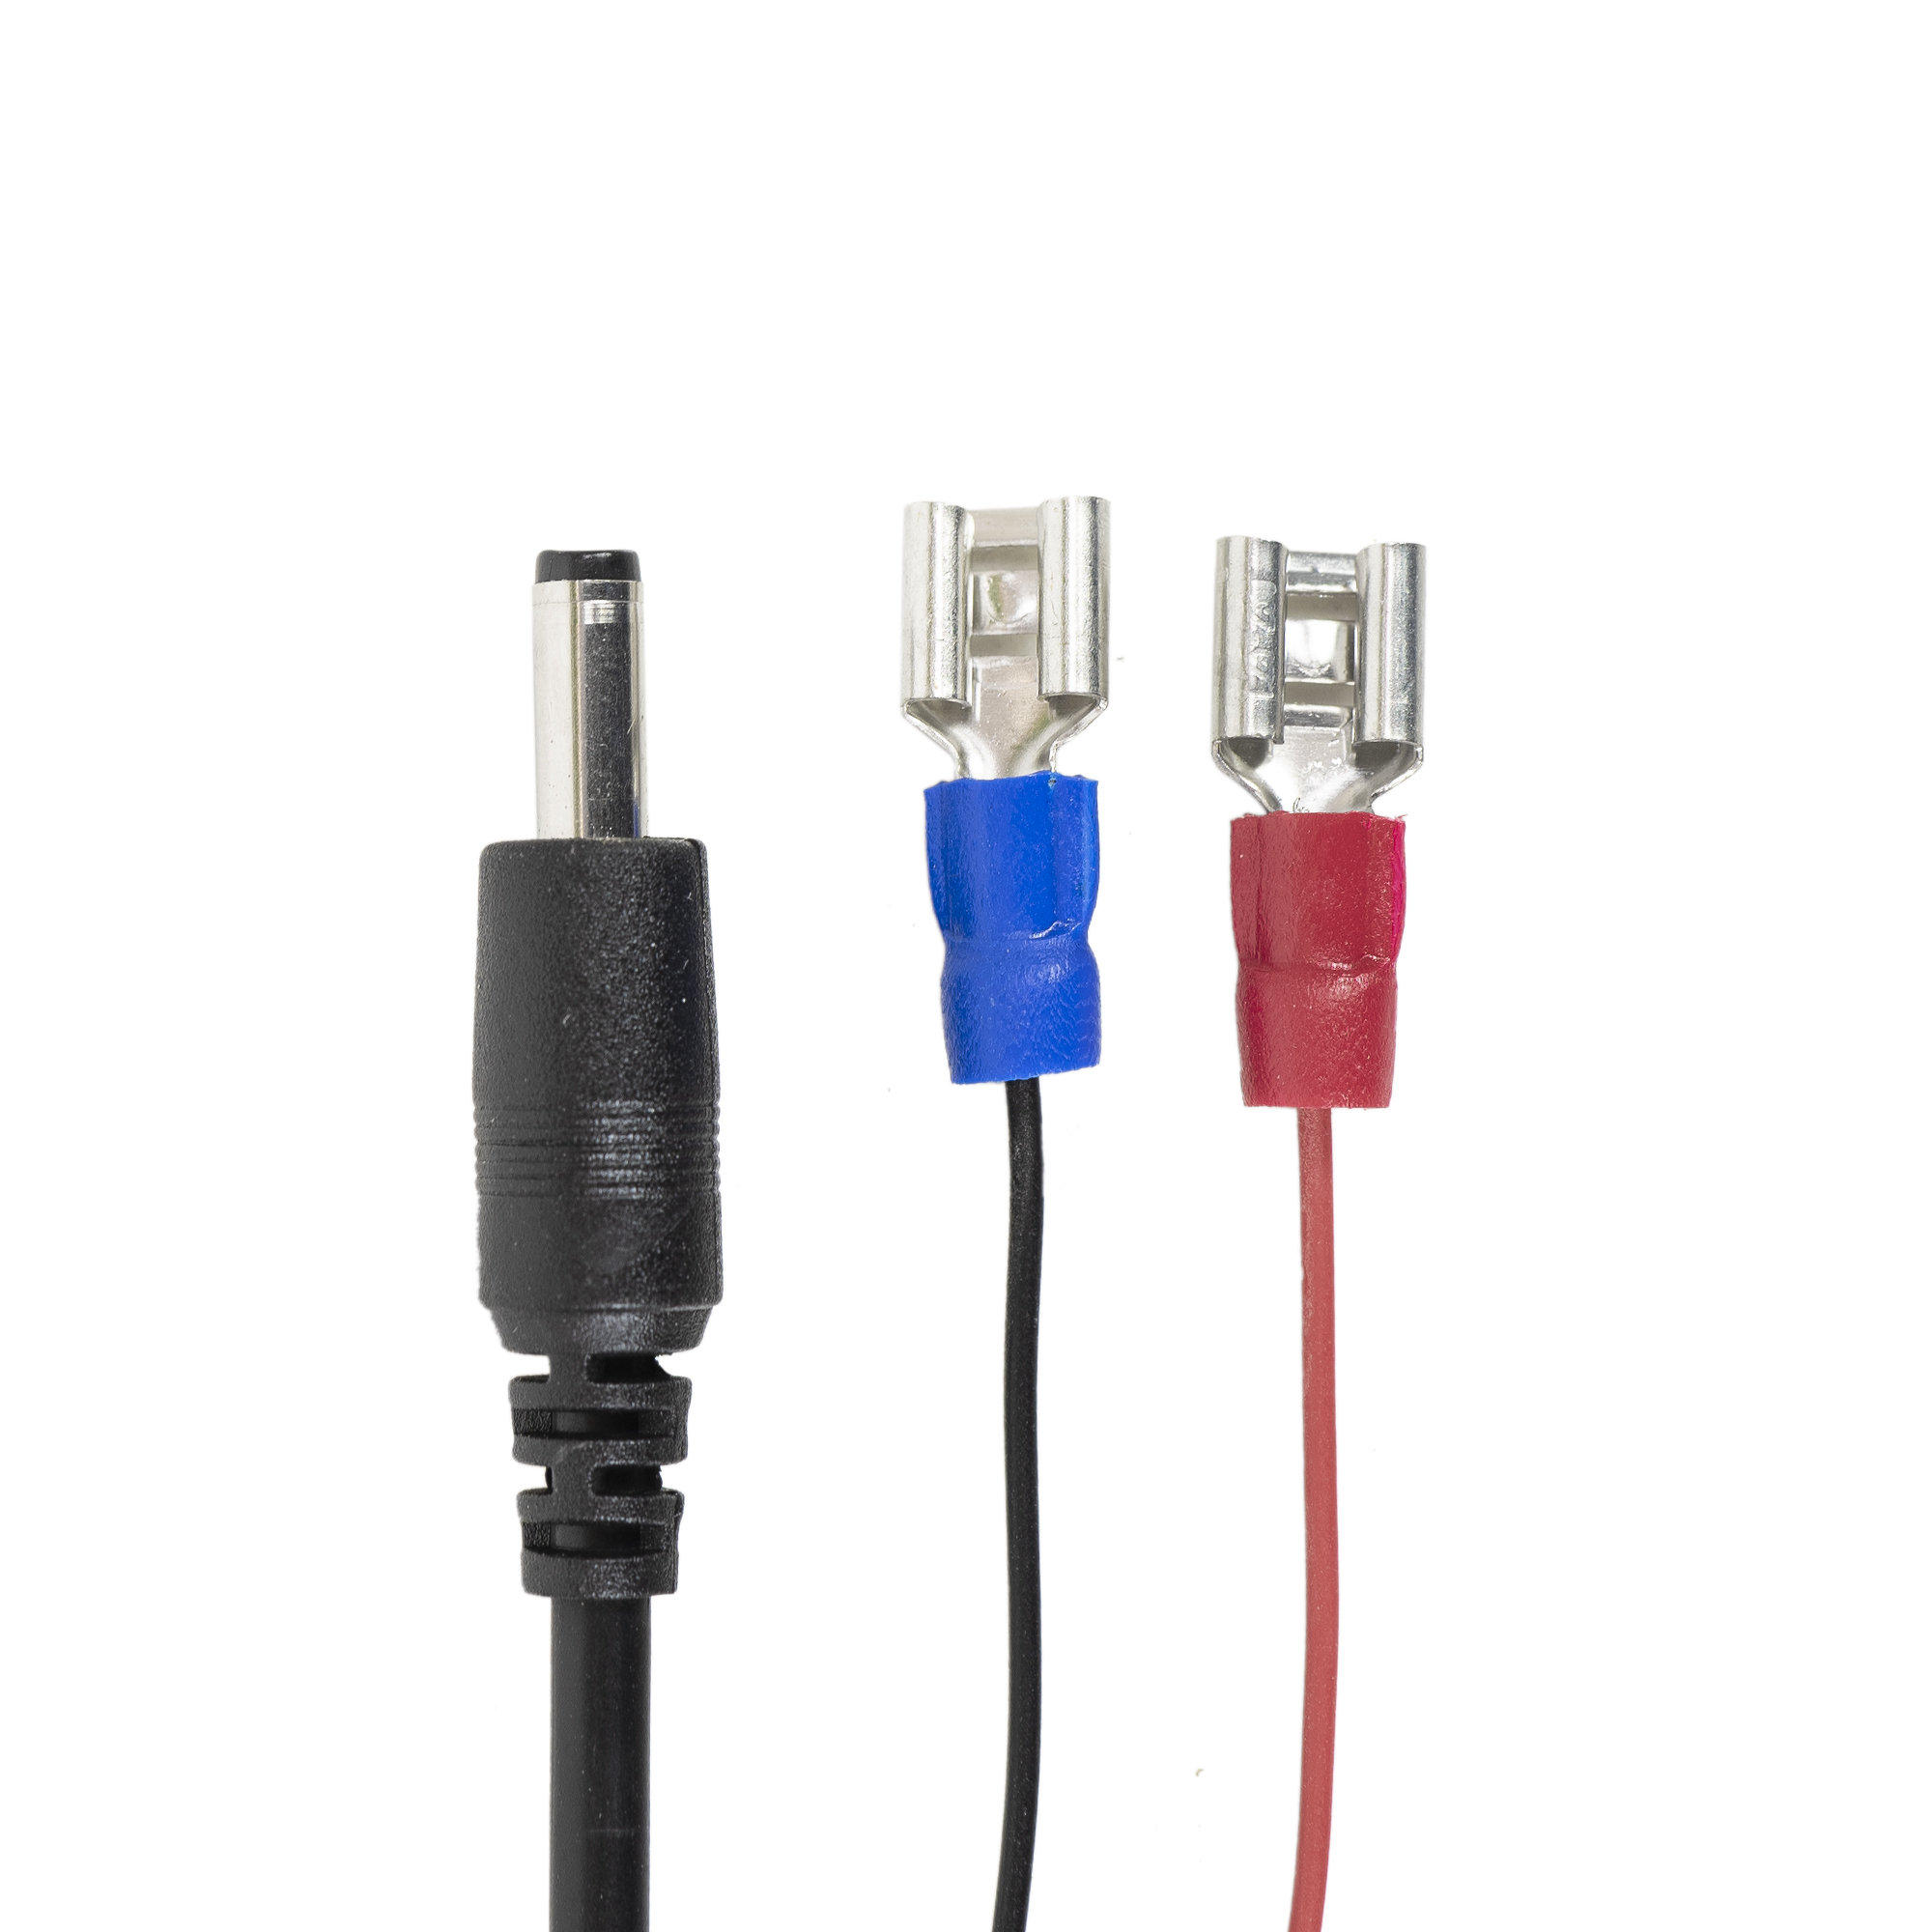 Cablu alimentare la baterie pentru camere de vanatoare, lungime 1.5m PNI 400C, PNI 350C, PNI 280 image1